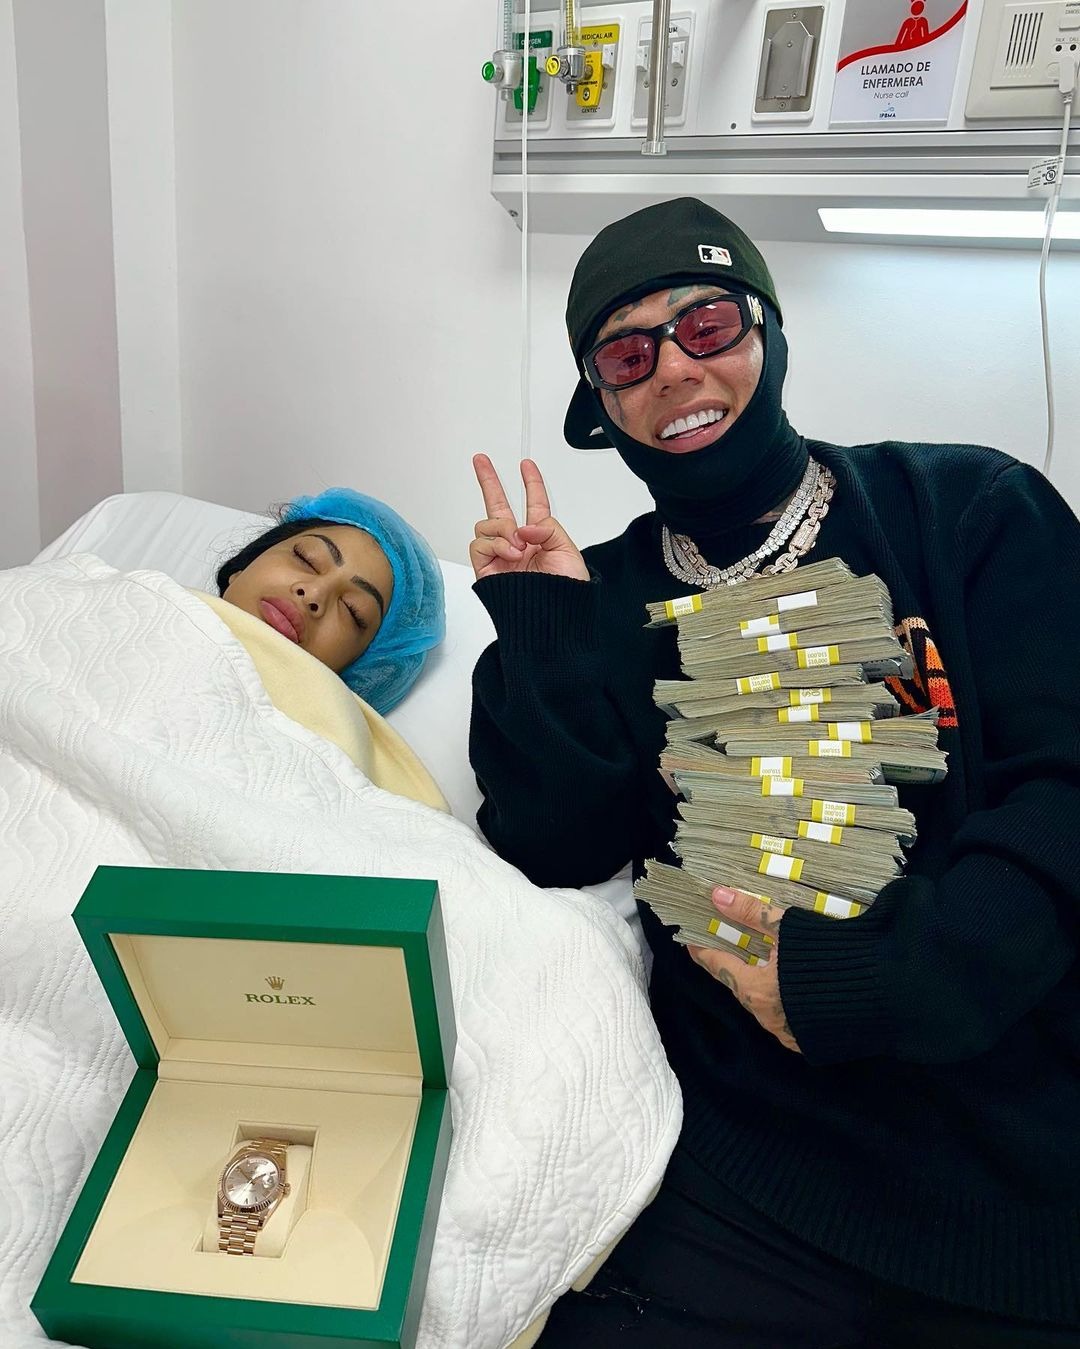 Yailín recibió millonario regalo de Tekashi69 por su cumpleaños / Instagram